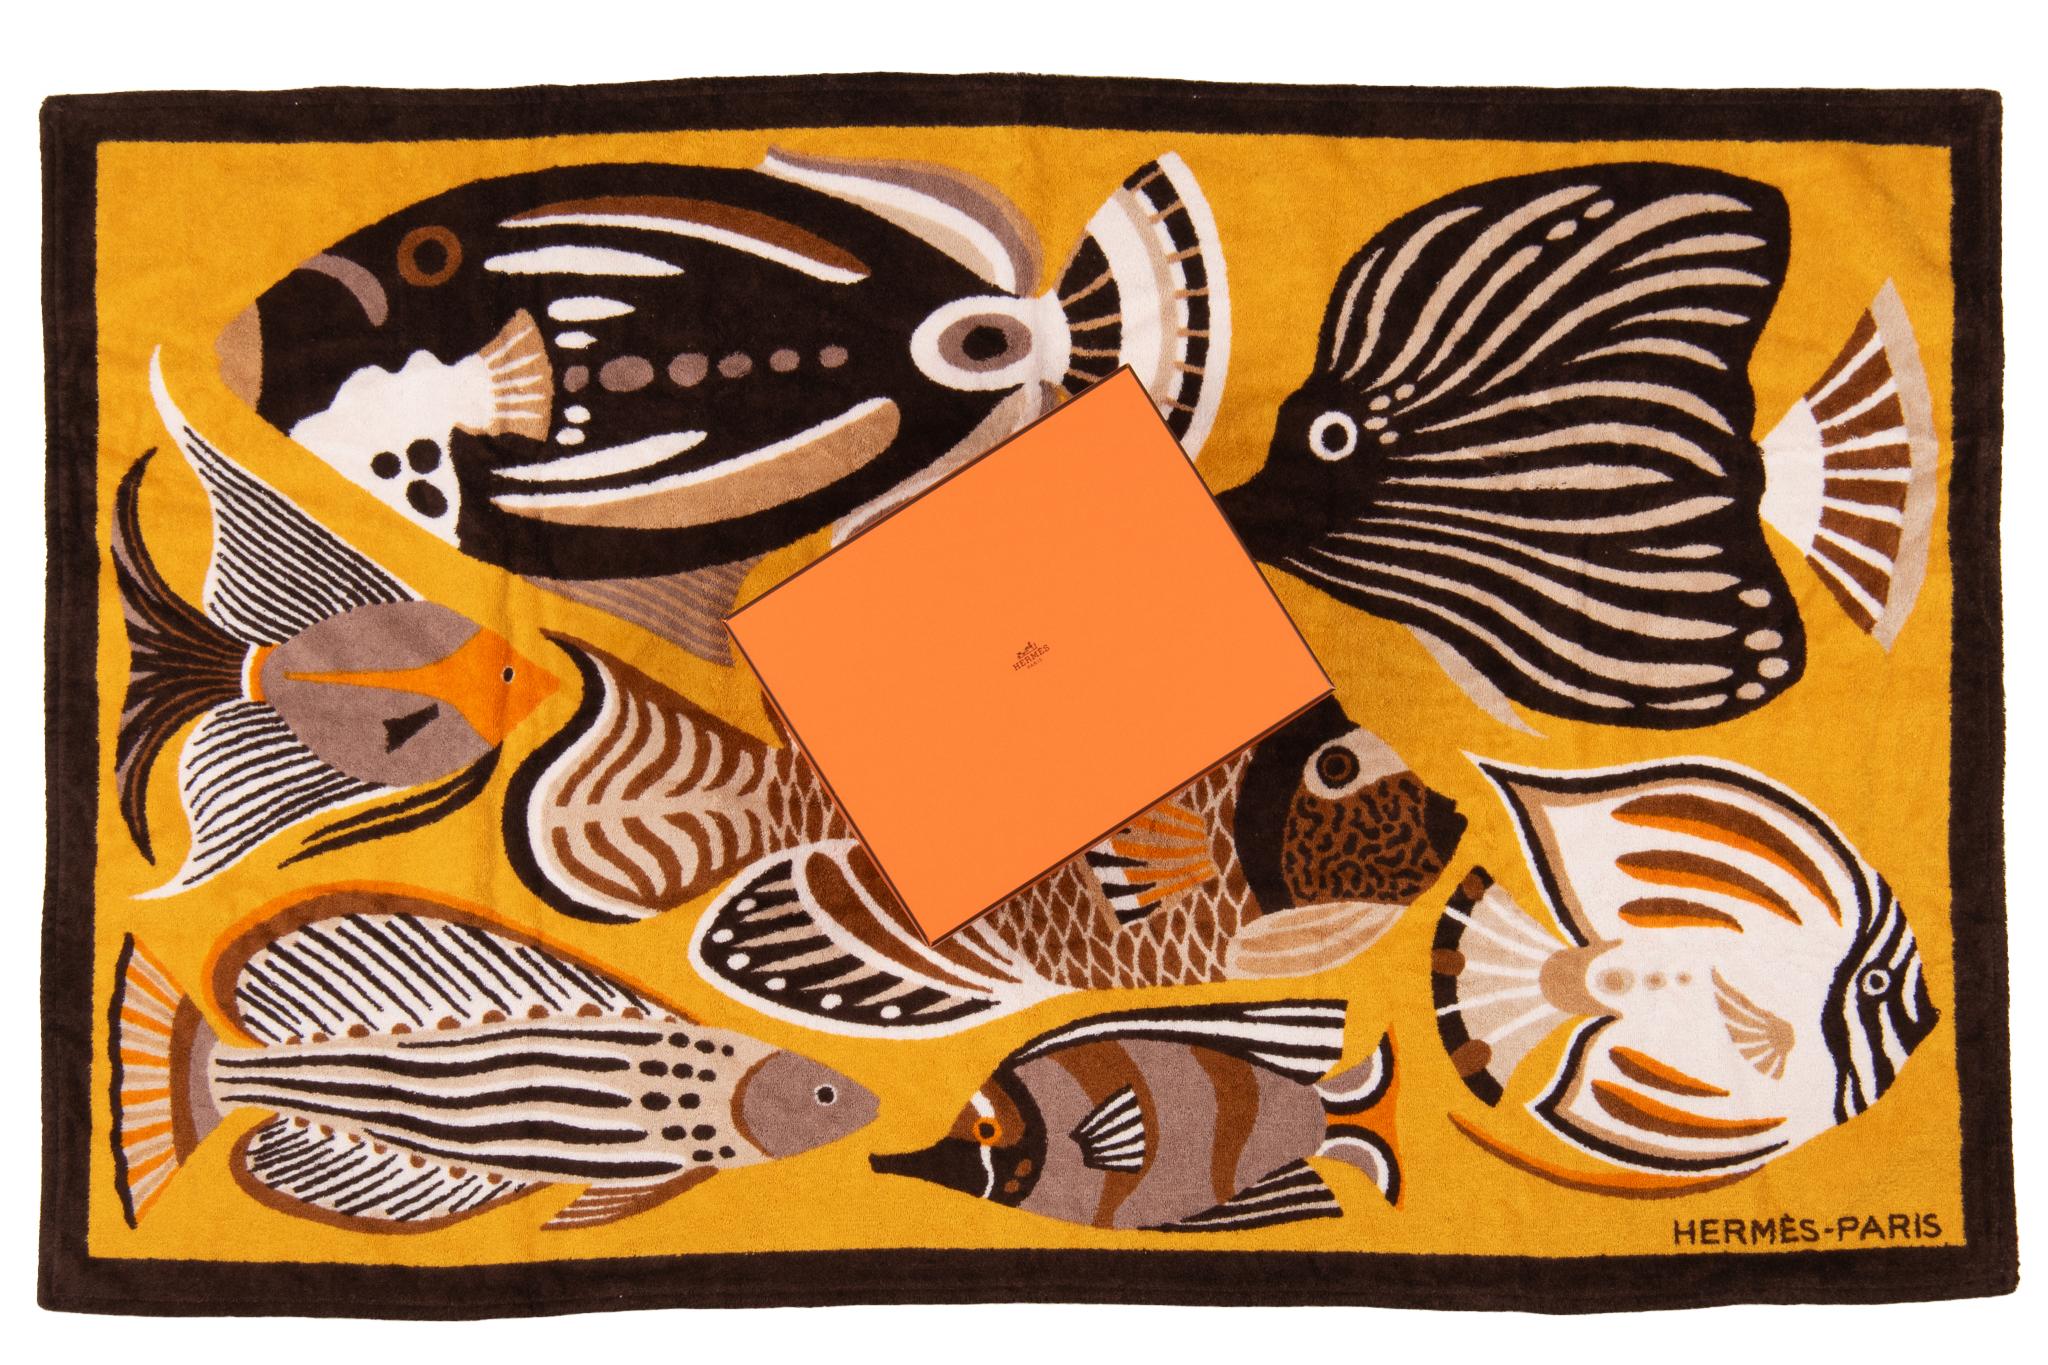 Serviette de plage Hermès Fish. Le motif représente plusieurs poissons de différentes couleurs. La pièce est neuve et livrée dans sa boîte d'origine.